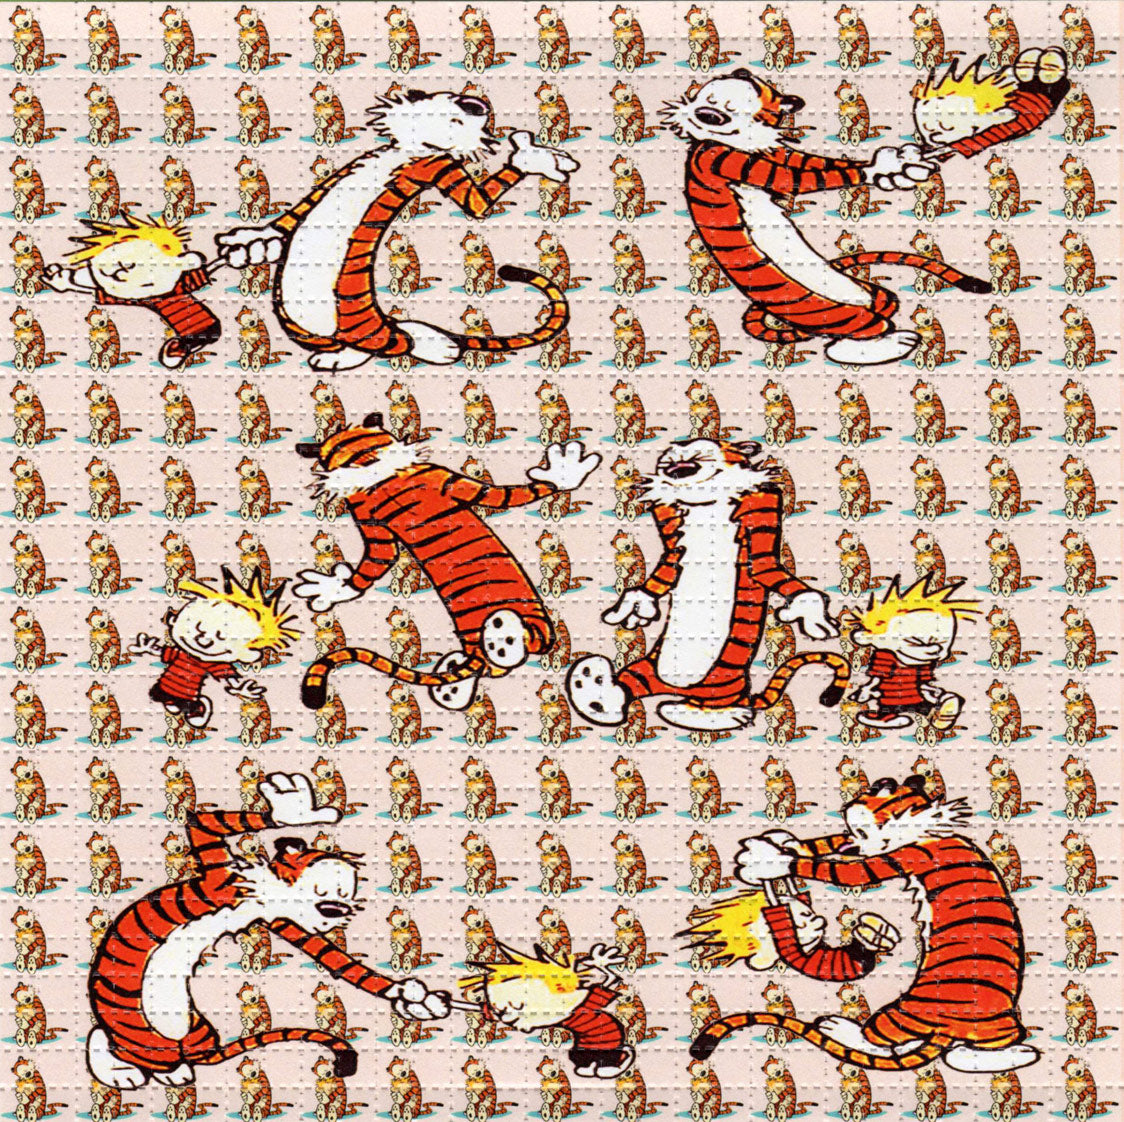 Calvin Tripping Dance Hobbes LSD blotter art print